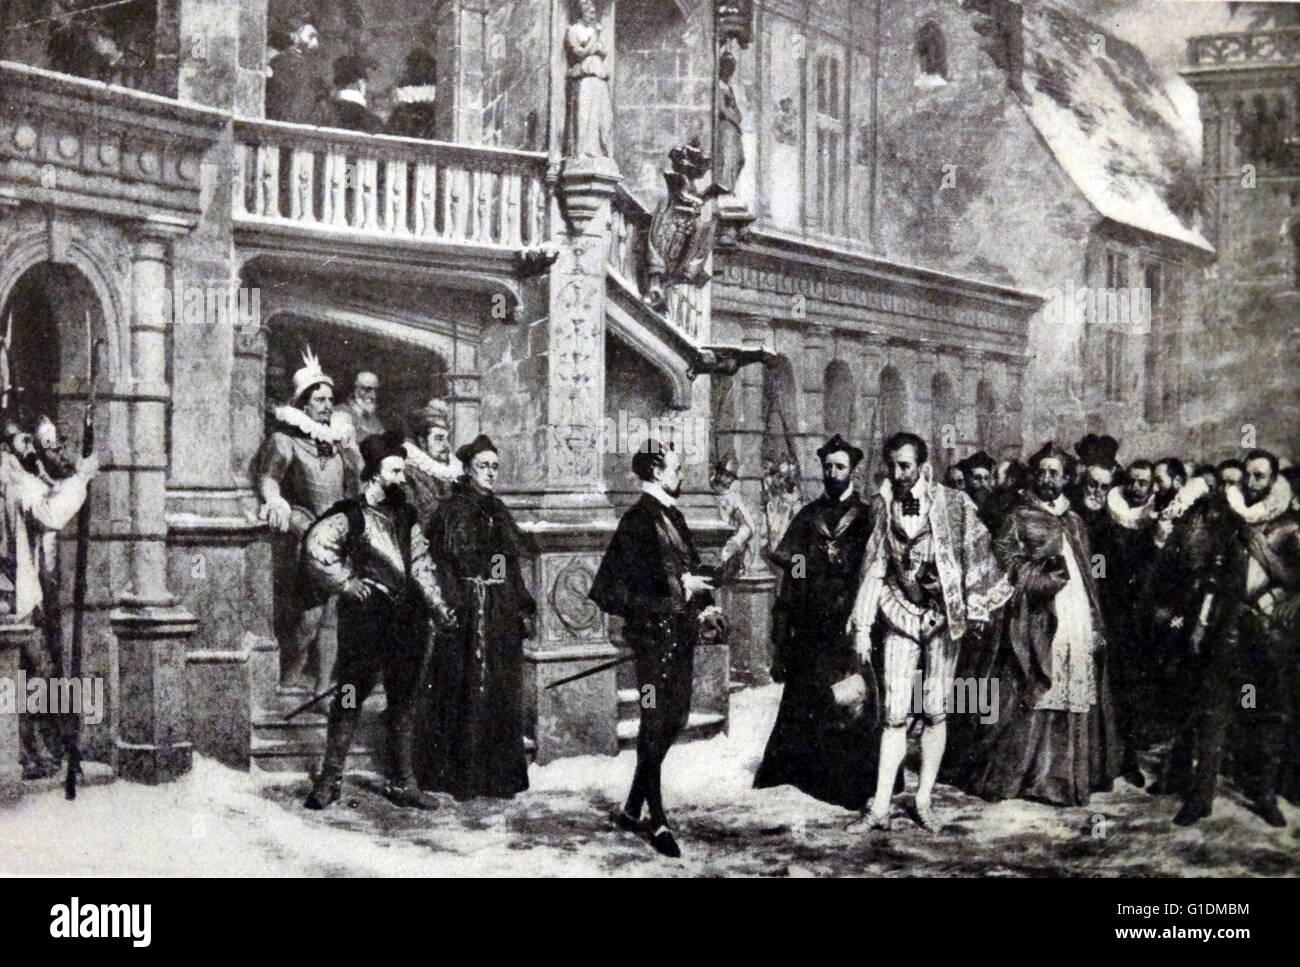 Druck der "Étienne Marcel" von Lucien Stephen Mélingue (1841-1889) Geschichte Maler französischen Zugehörigkeit zu der Bewegung akademischen. Vom 19. Jahrhundert Stockfoto